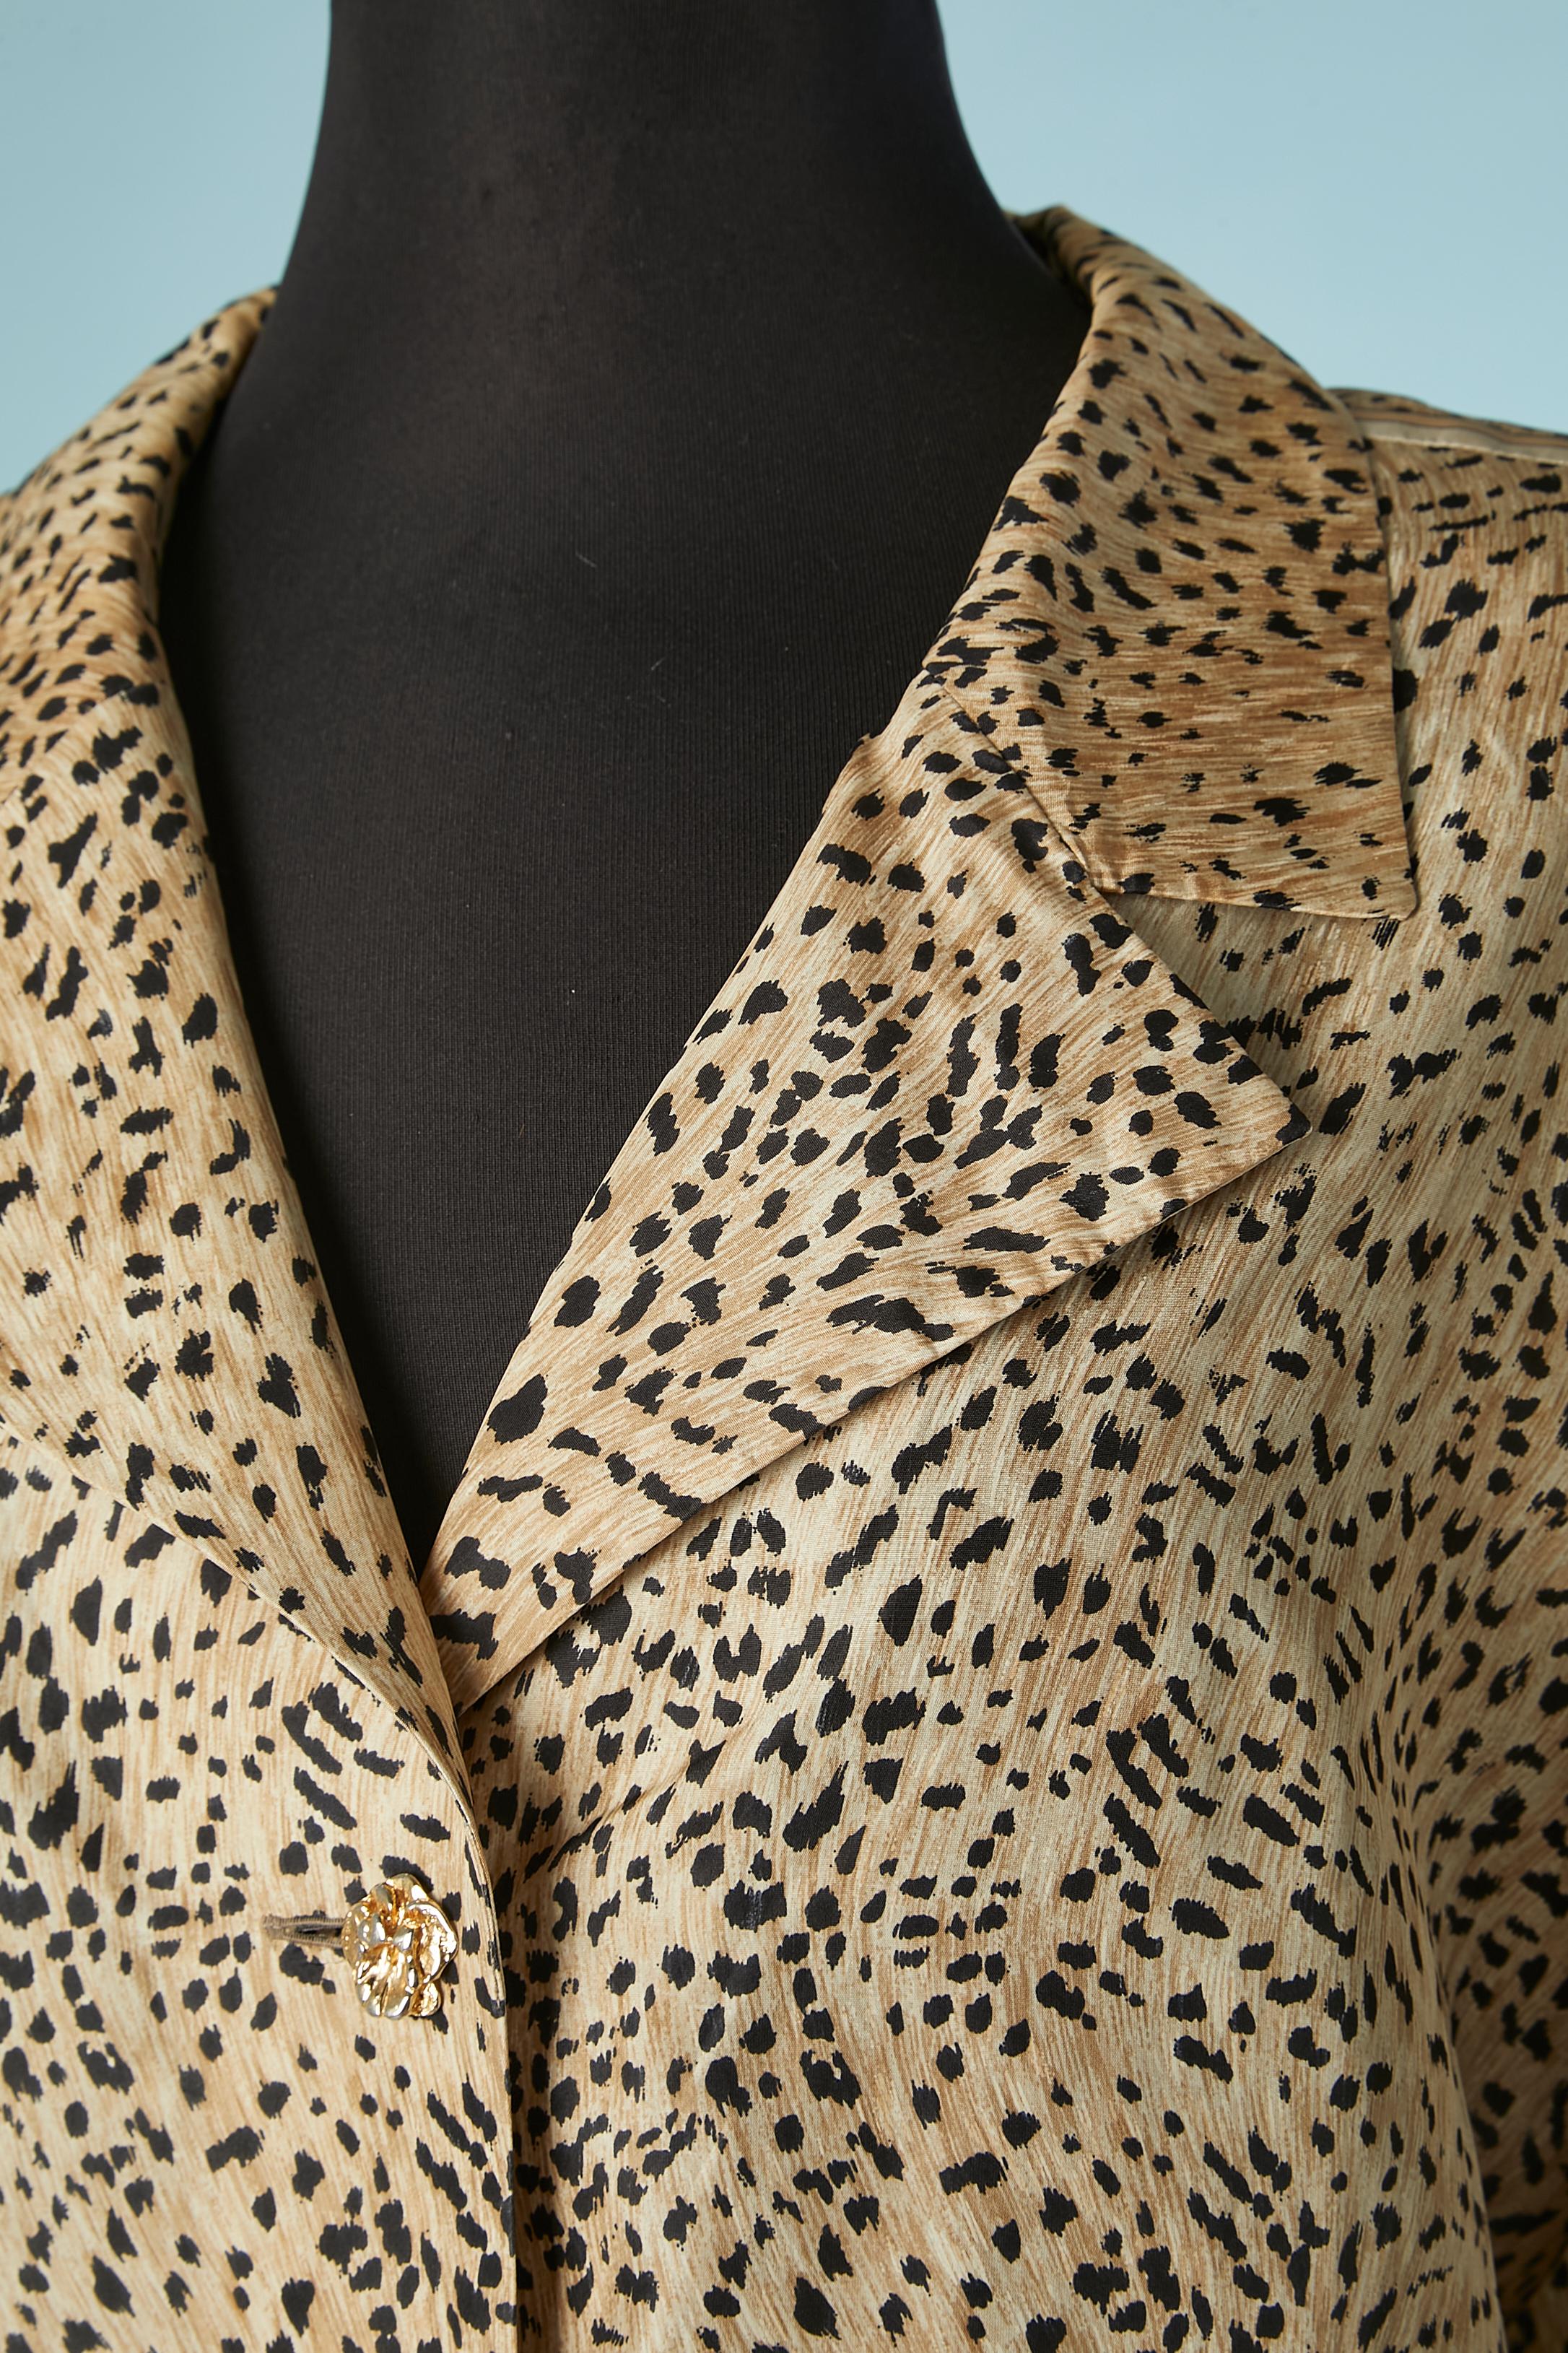 Crips Seidenhemd mit Leopardenmuster und goldenem Blumenknopf aus Metall.
Schulterpolster. 
GRÖSSE 46 (Fr)  XL 